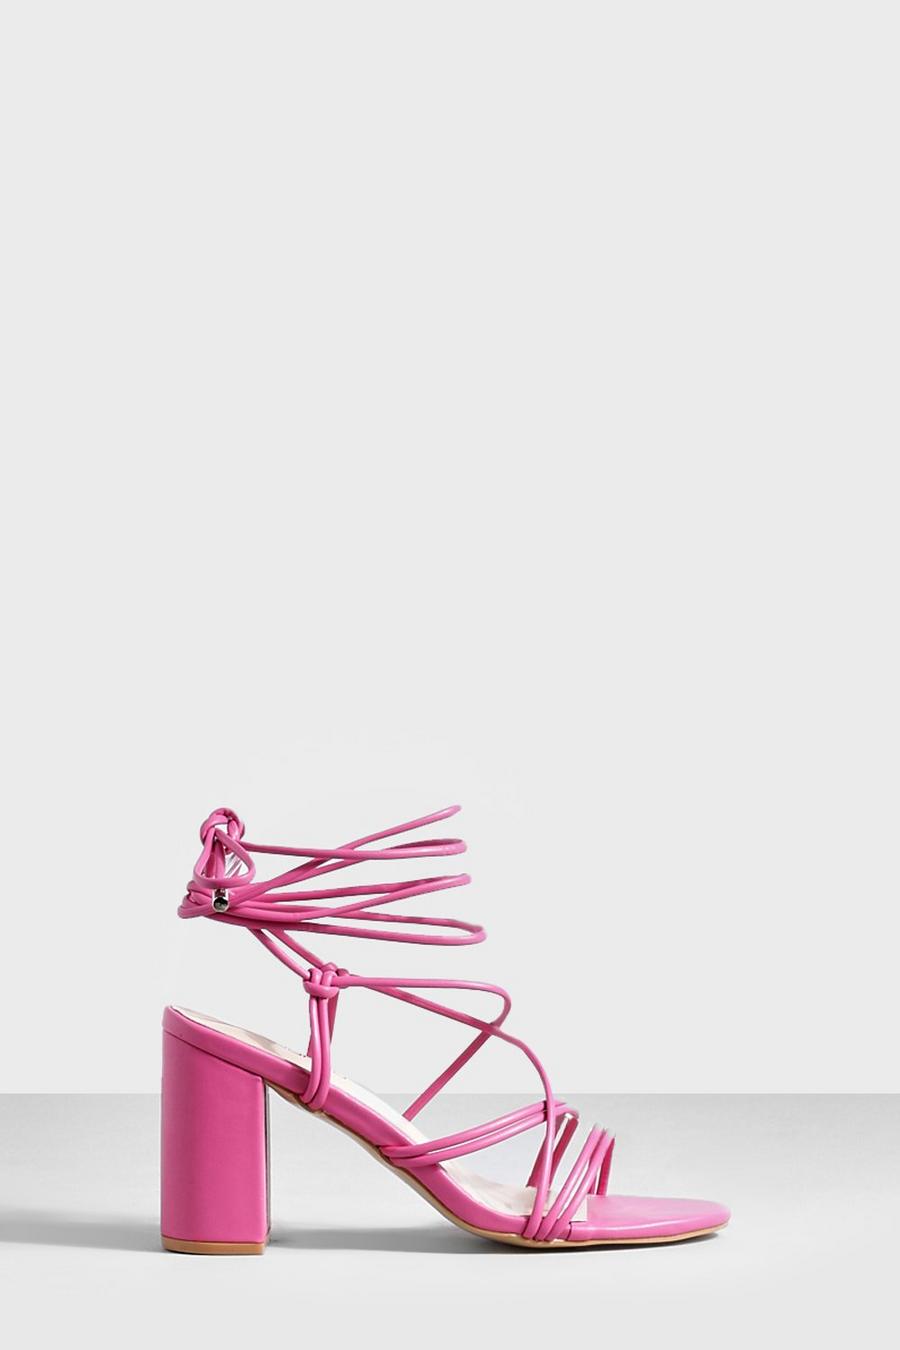 Sandalias con tacón grueso y tiras cruzadas, Pink rosa